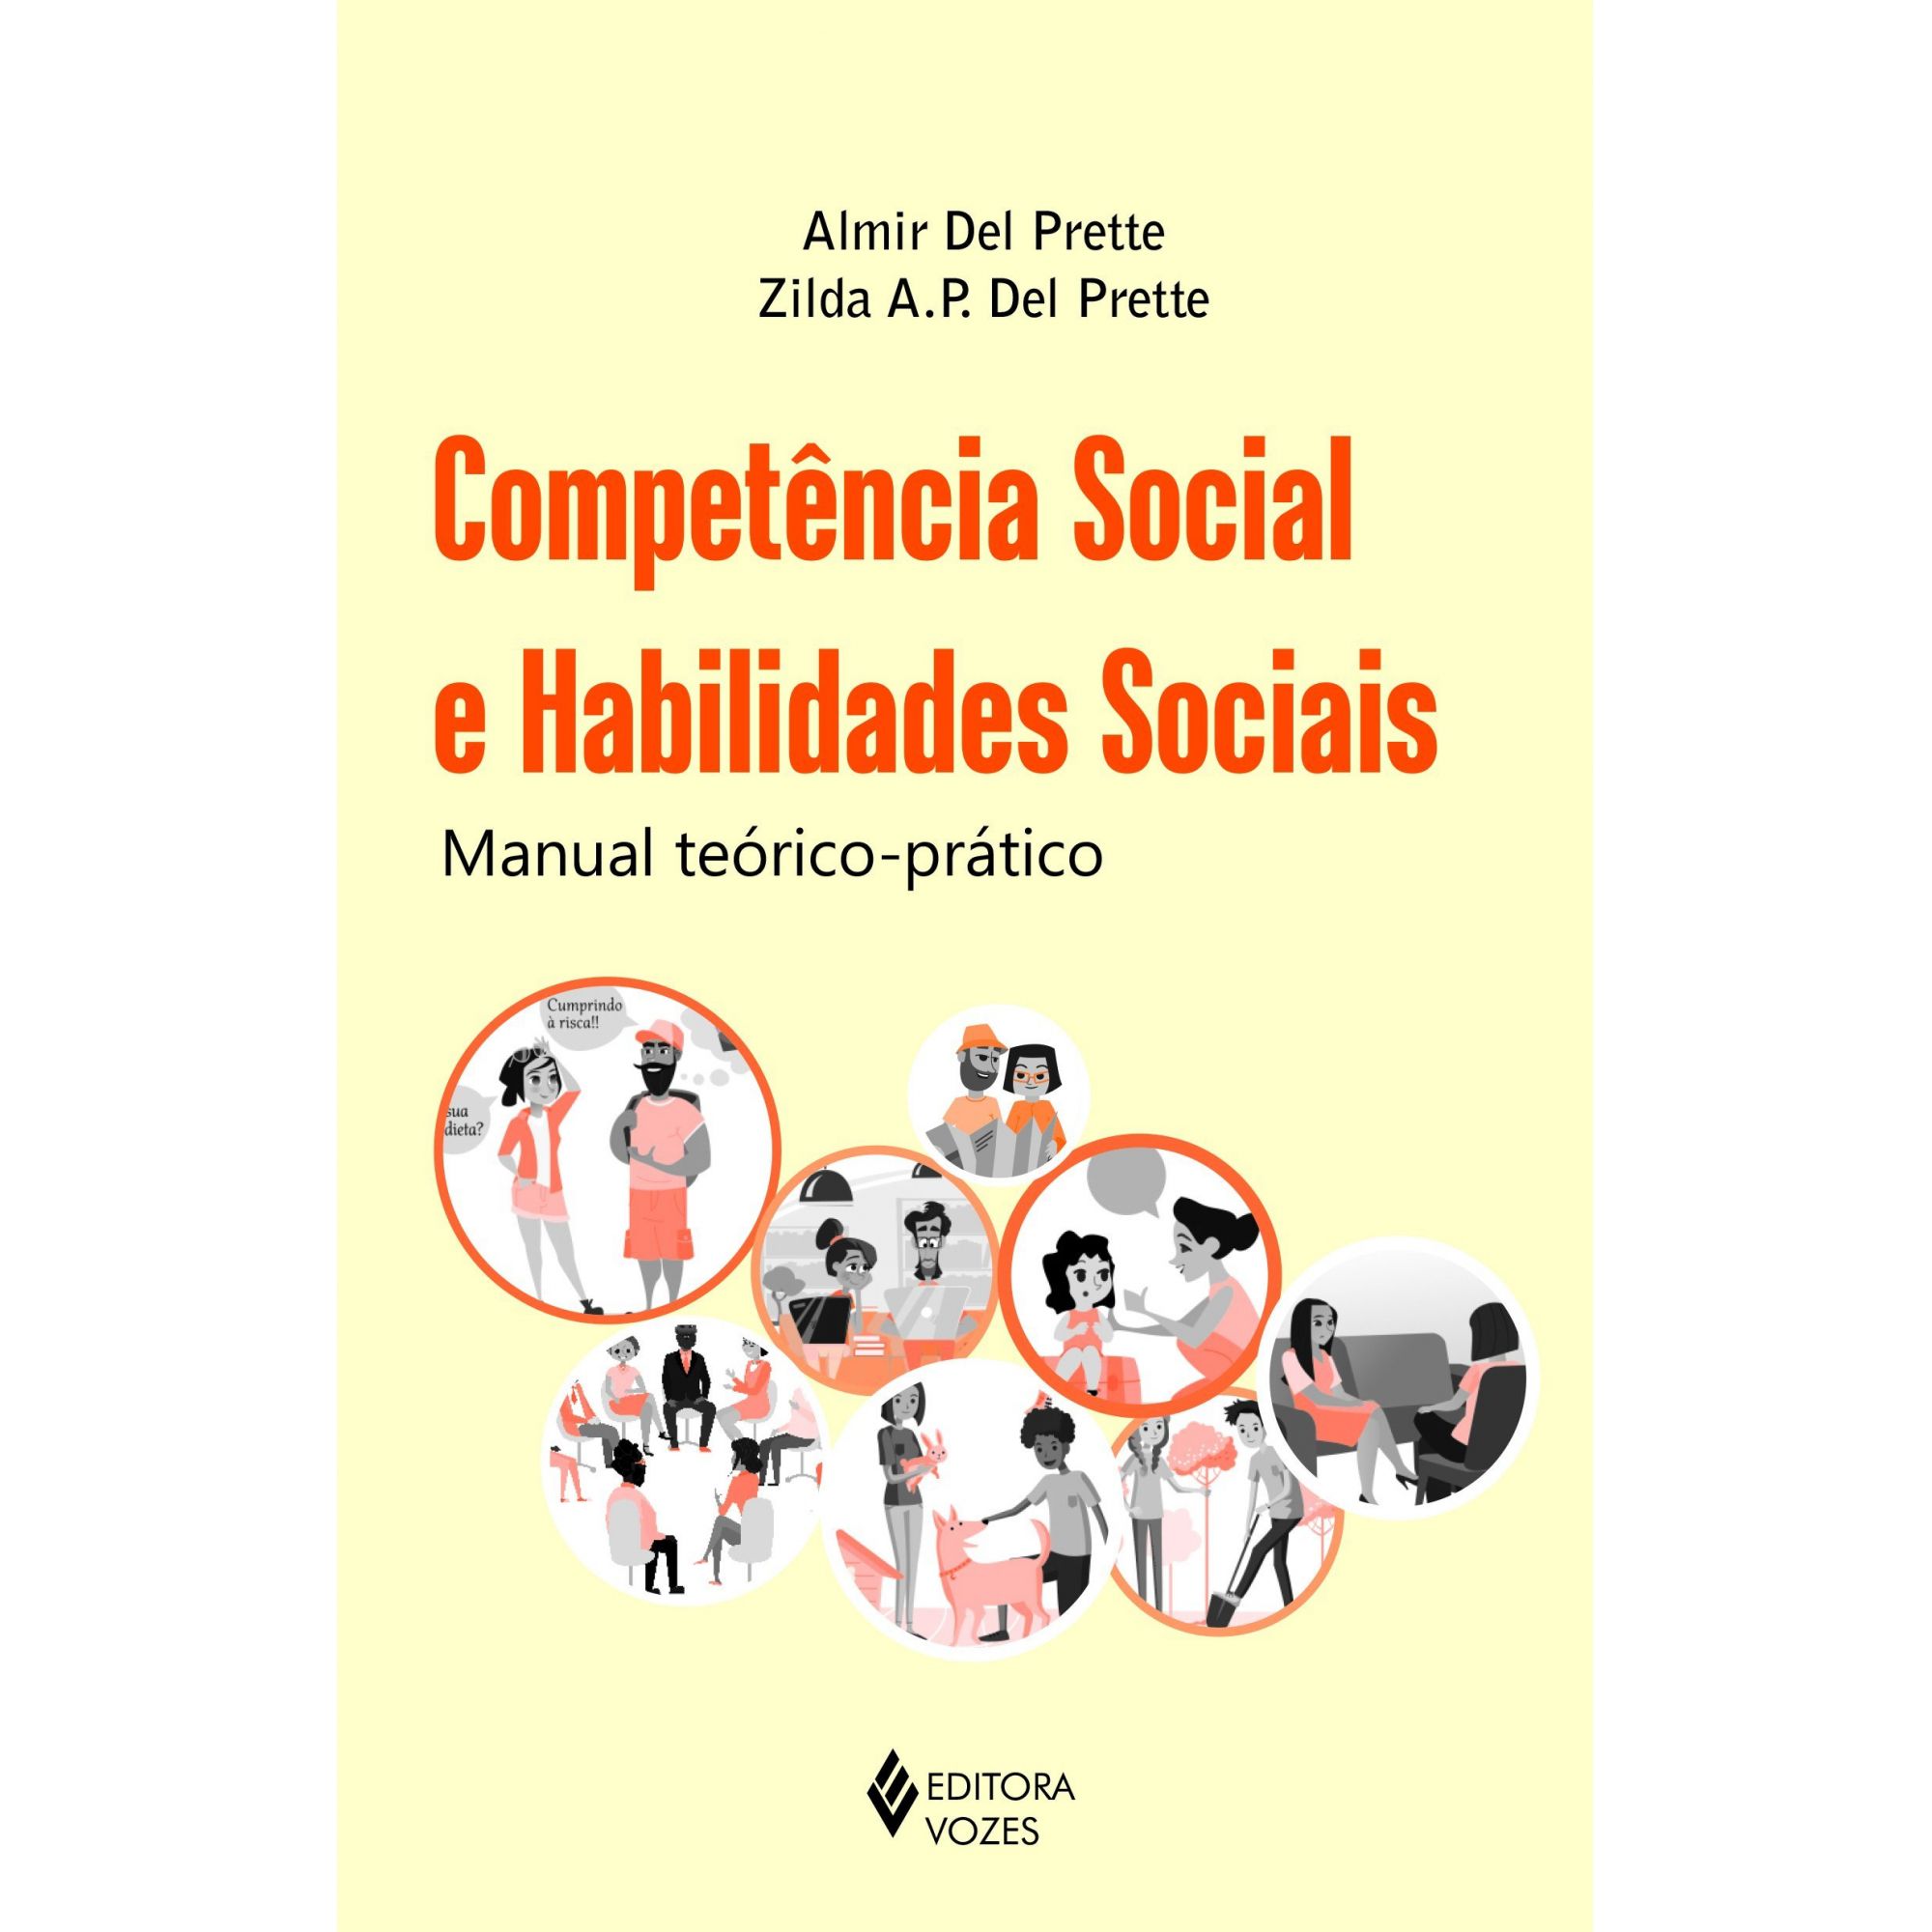 Competência social e habilidades sociais